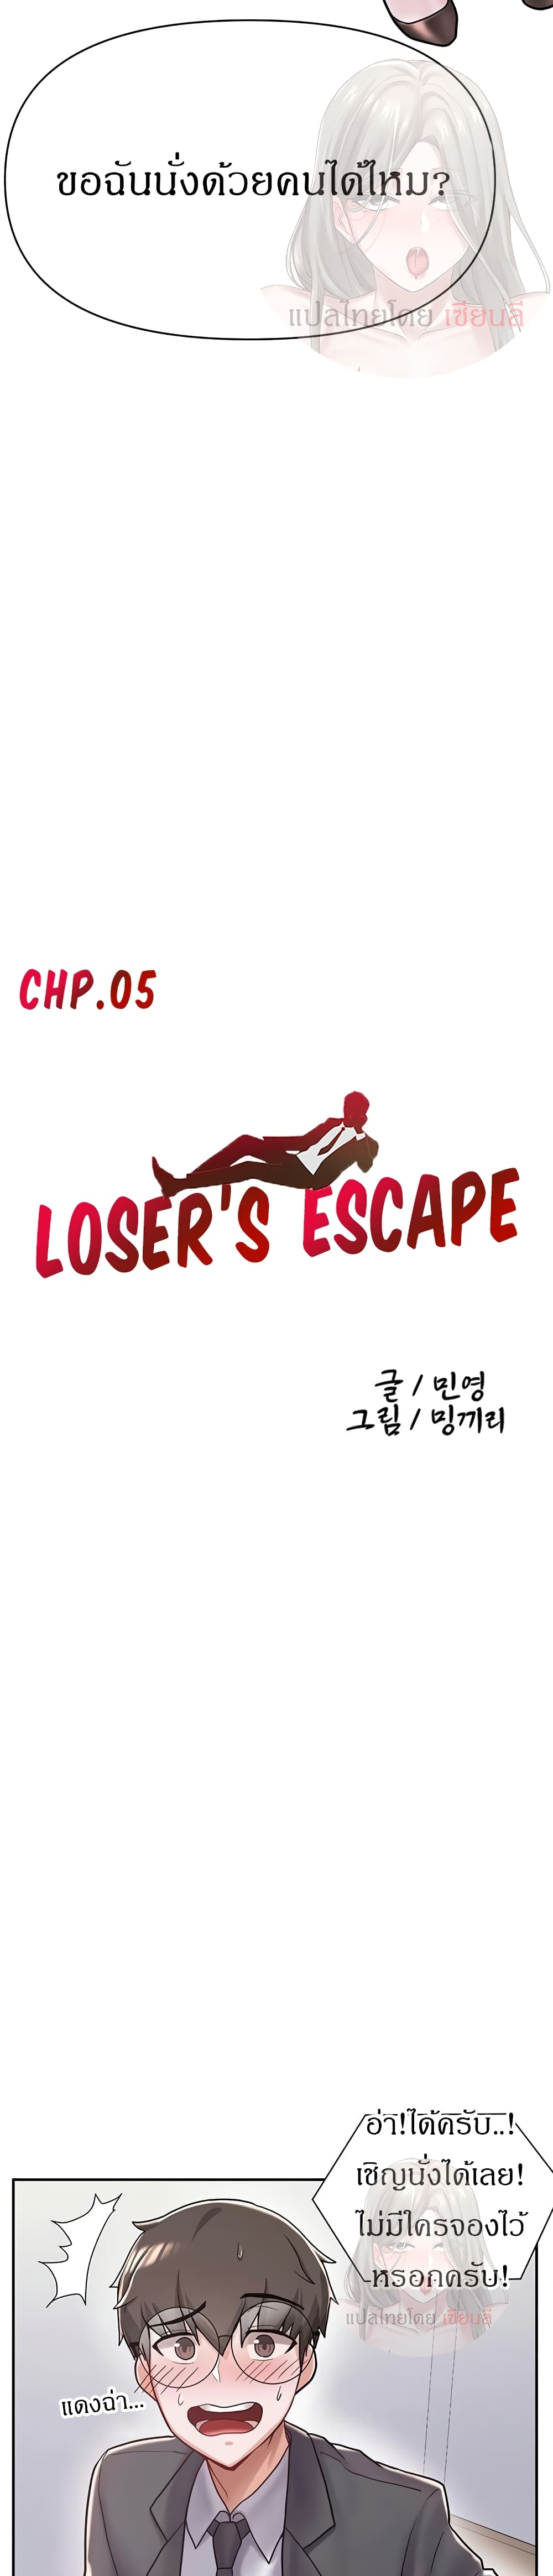 Escape Loser 5 04